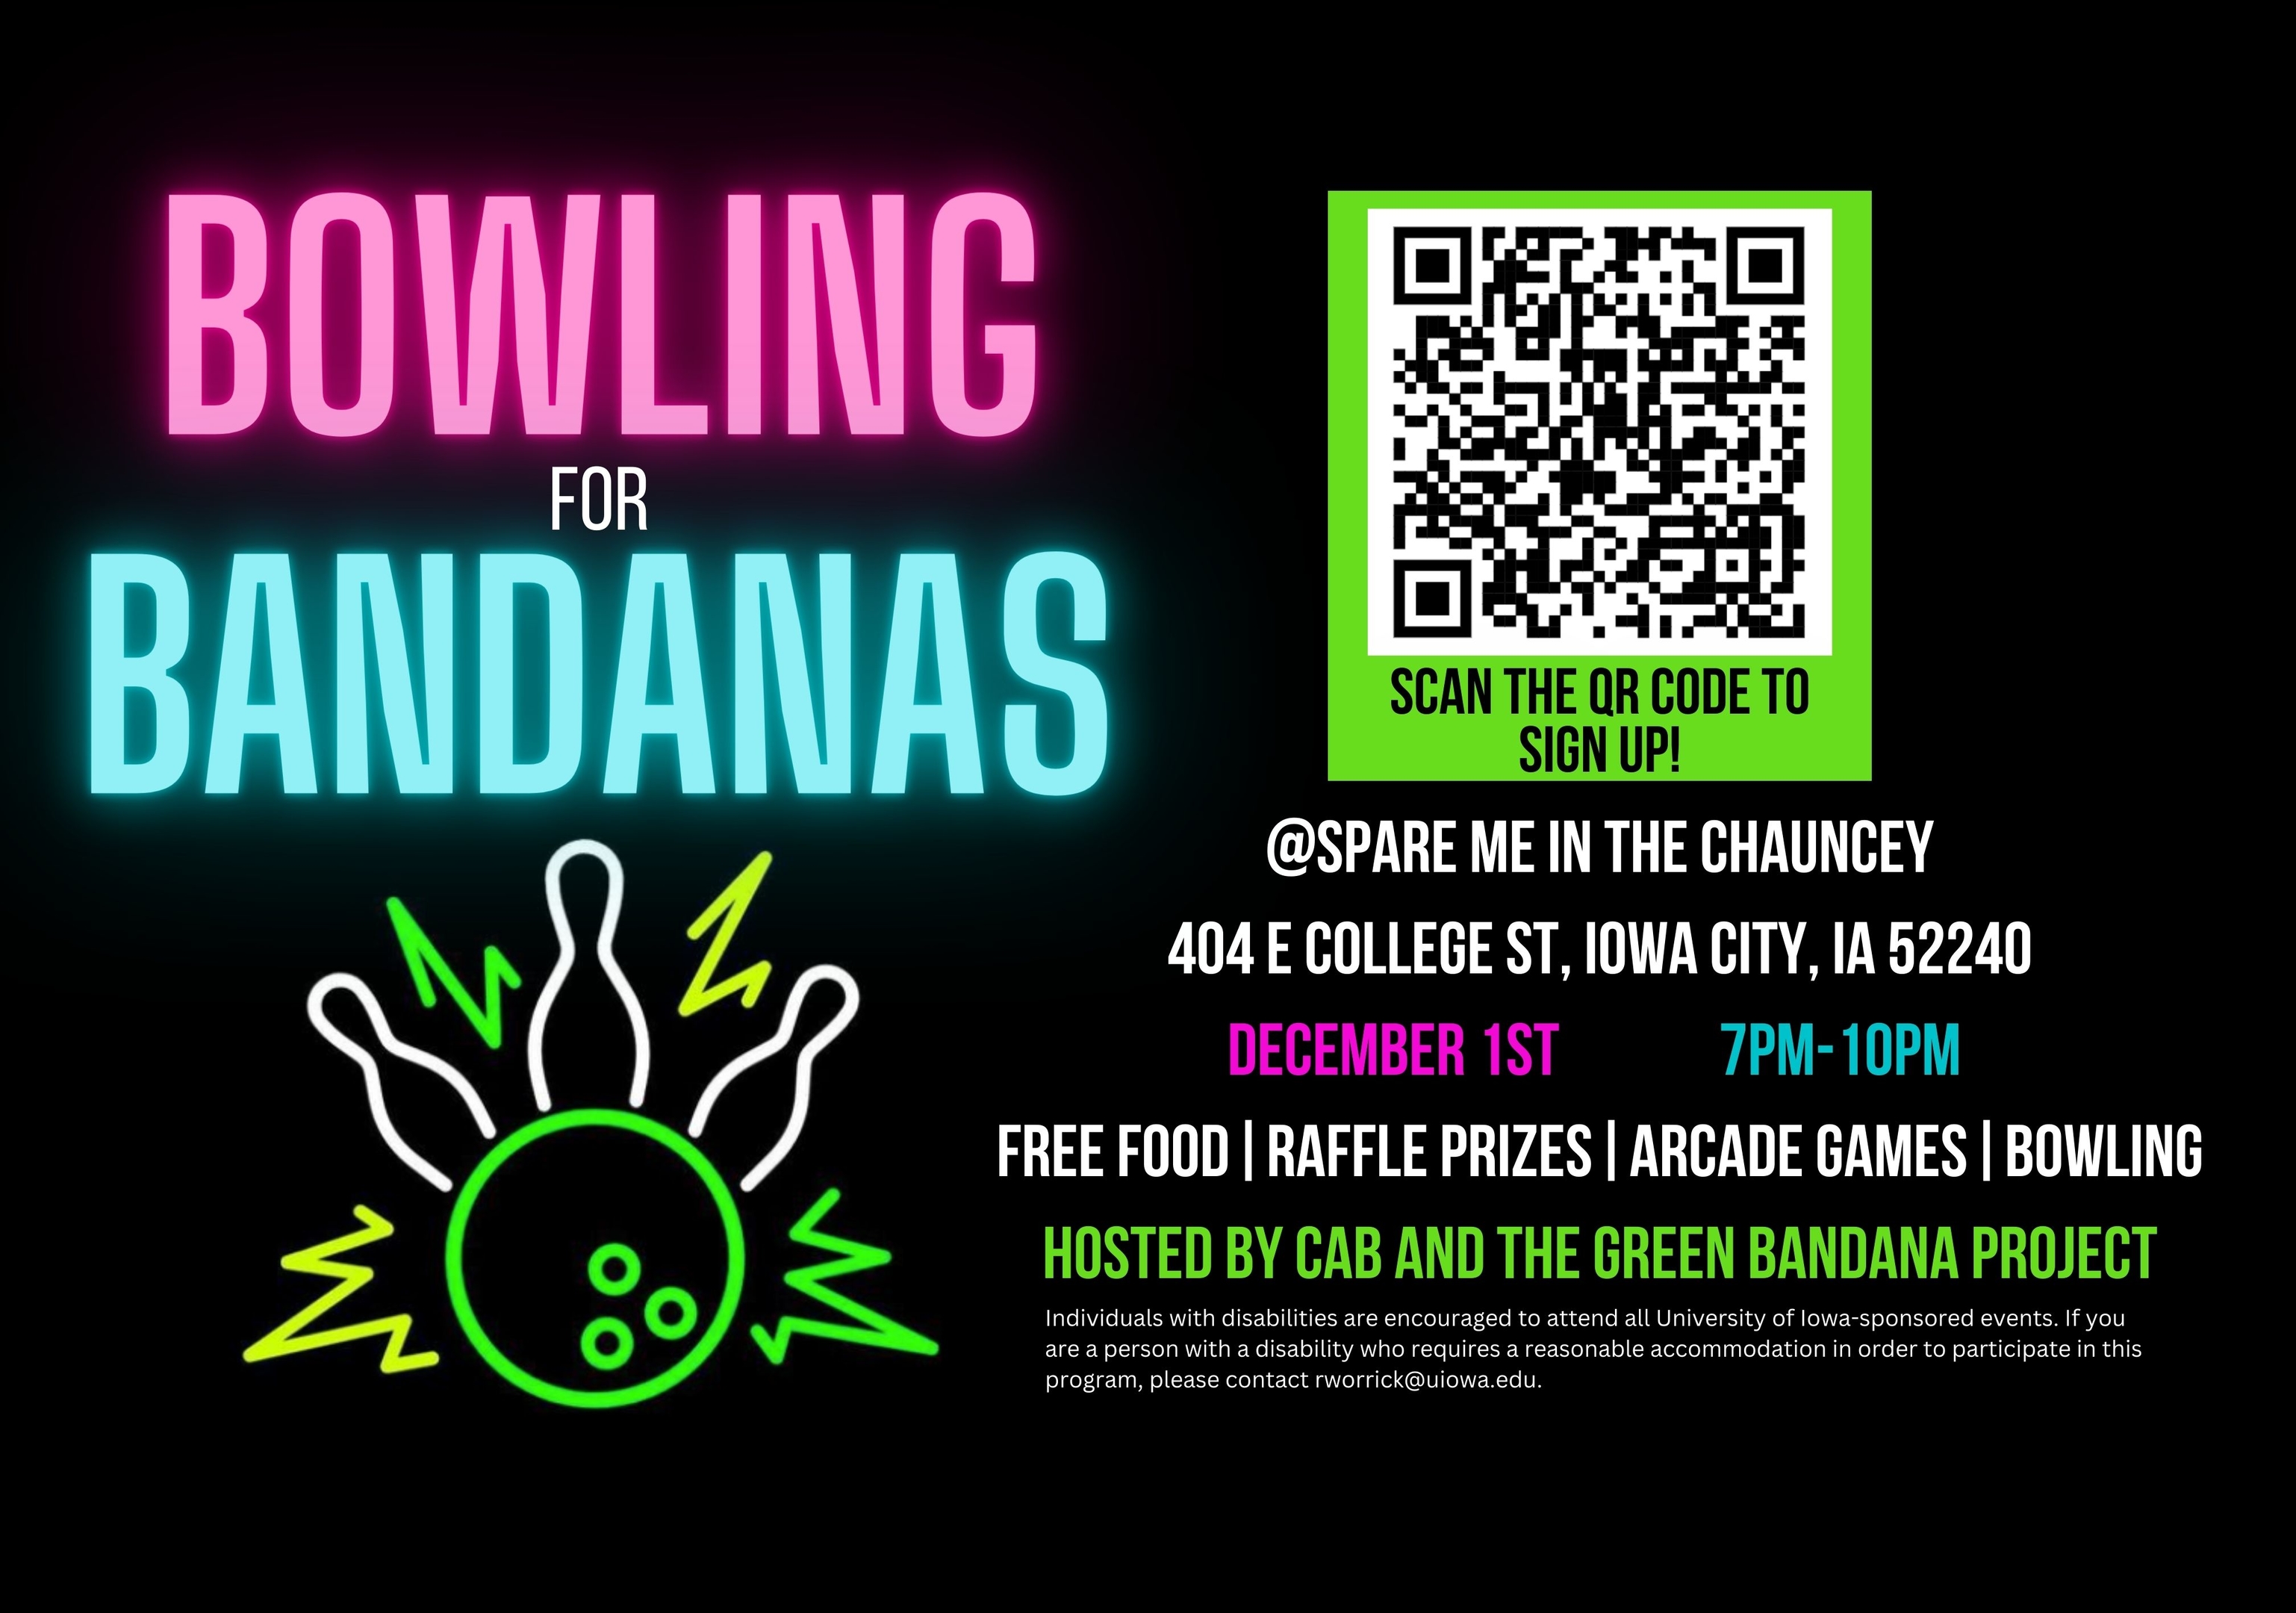 Bowling for Bandanas